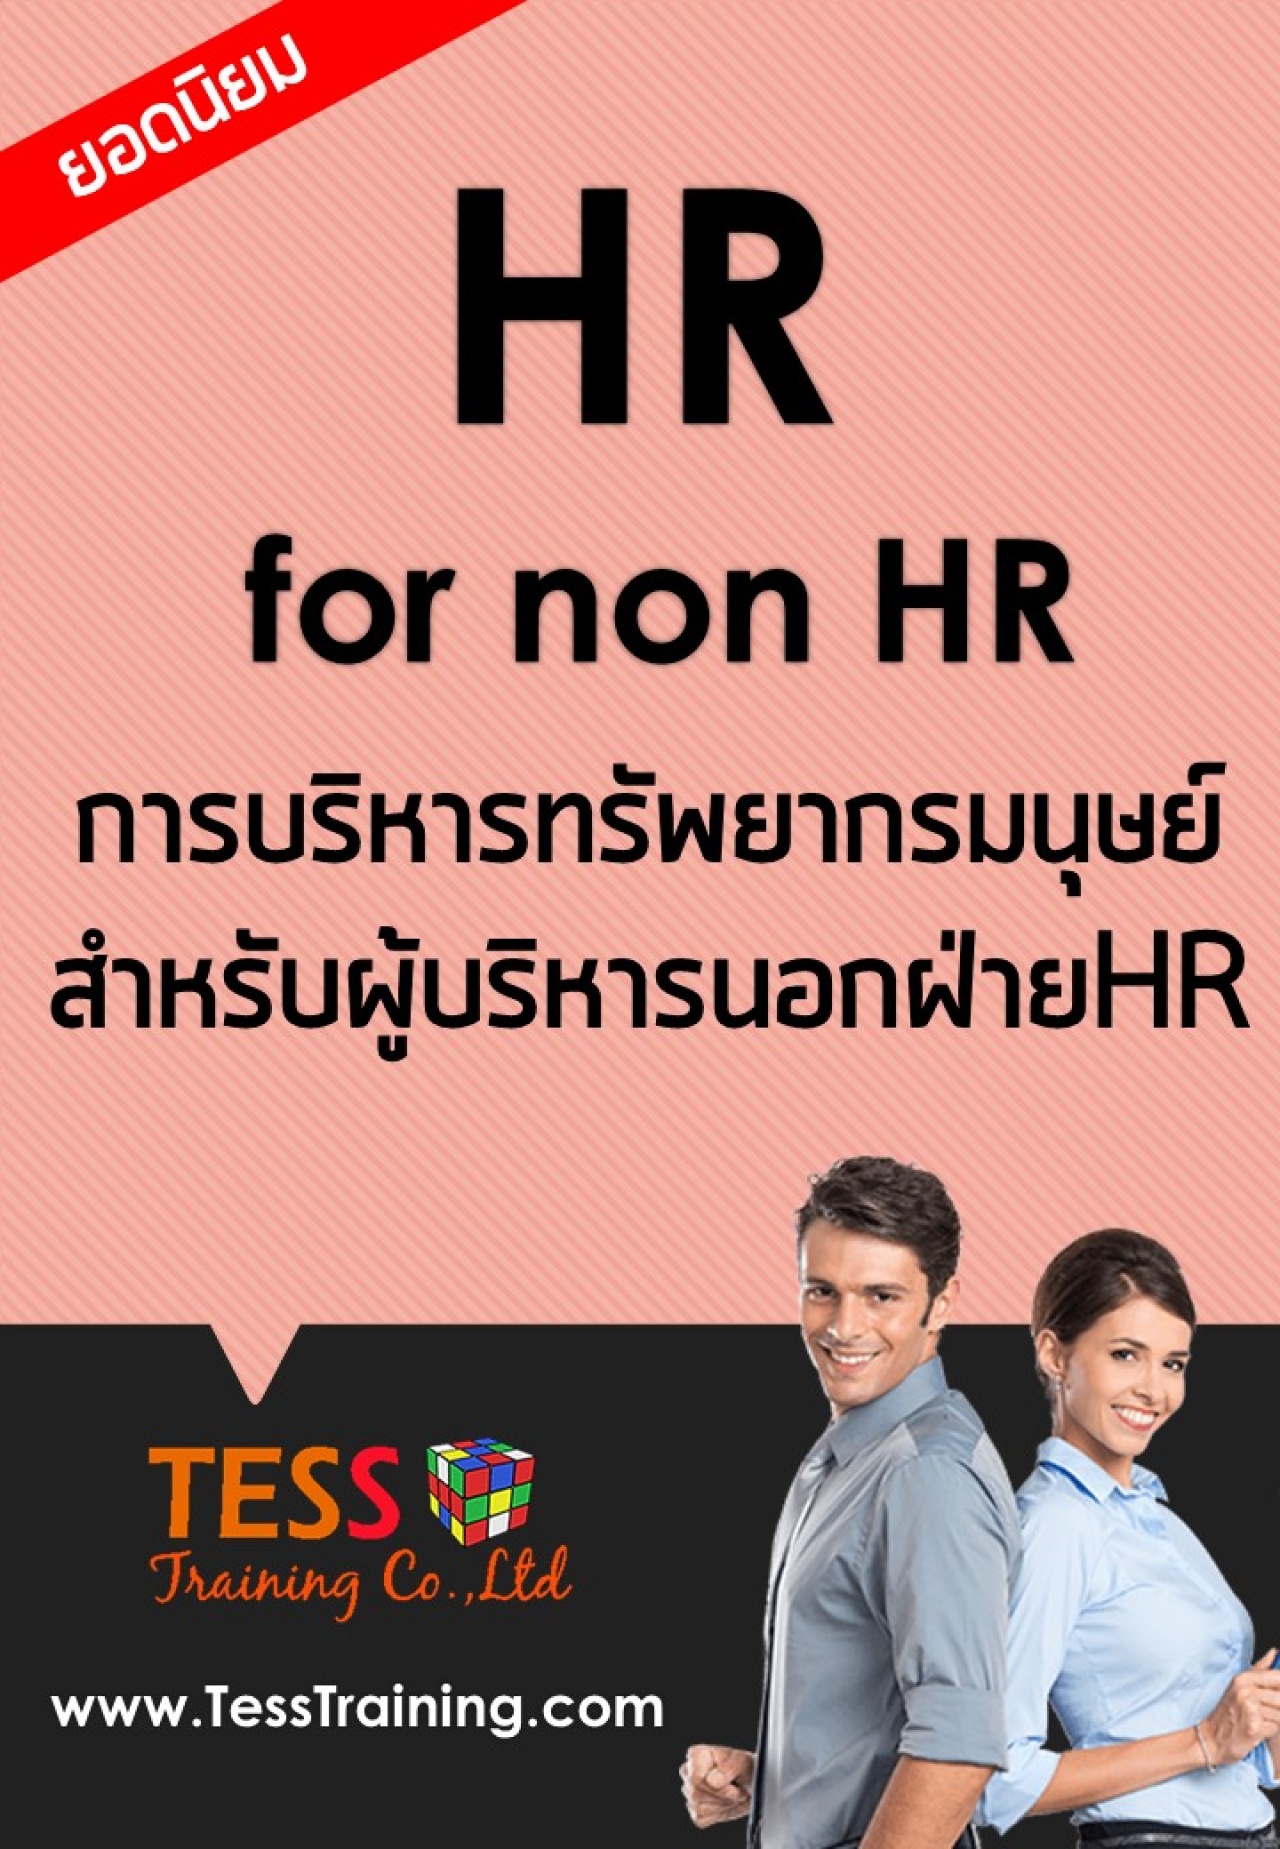 HR for non-HR การบริหารทรัพยากรมนุษย์สำหรับผู้บริหารนอกฝ่ายHR